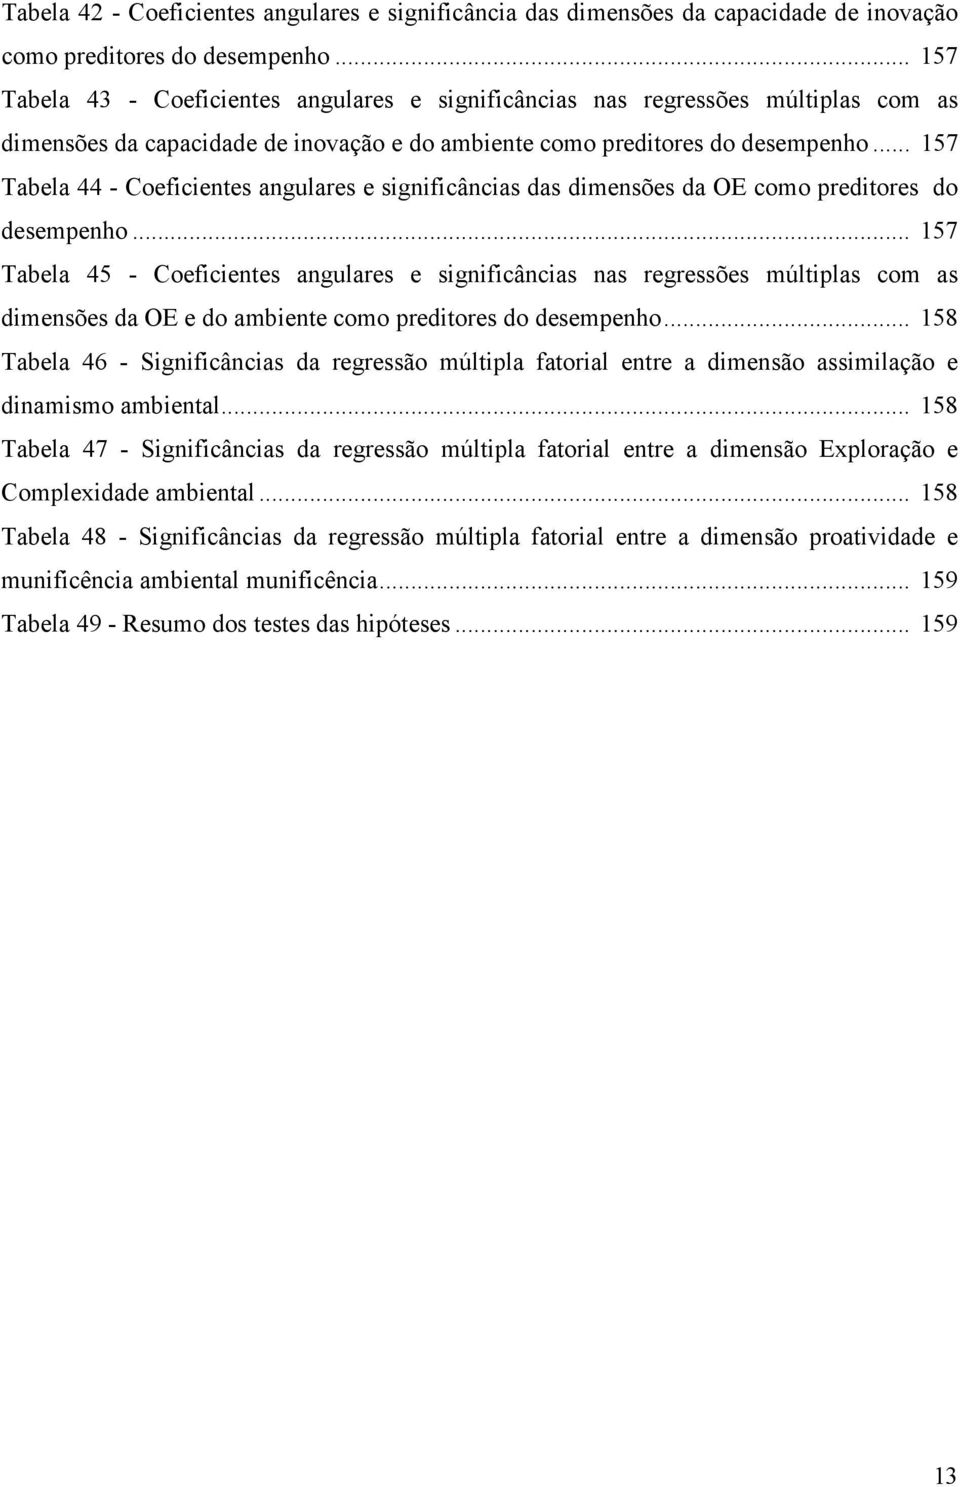 .. 157 Tabela 44 - Coeficientes angulares e significâncias das dimensões da OE como preditores do desempenho.